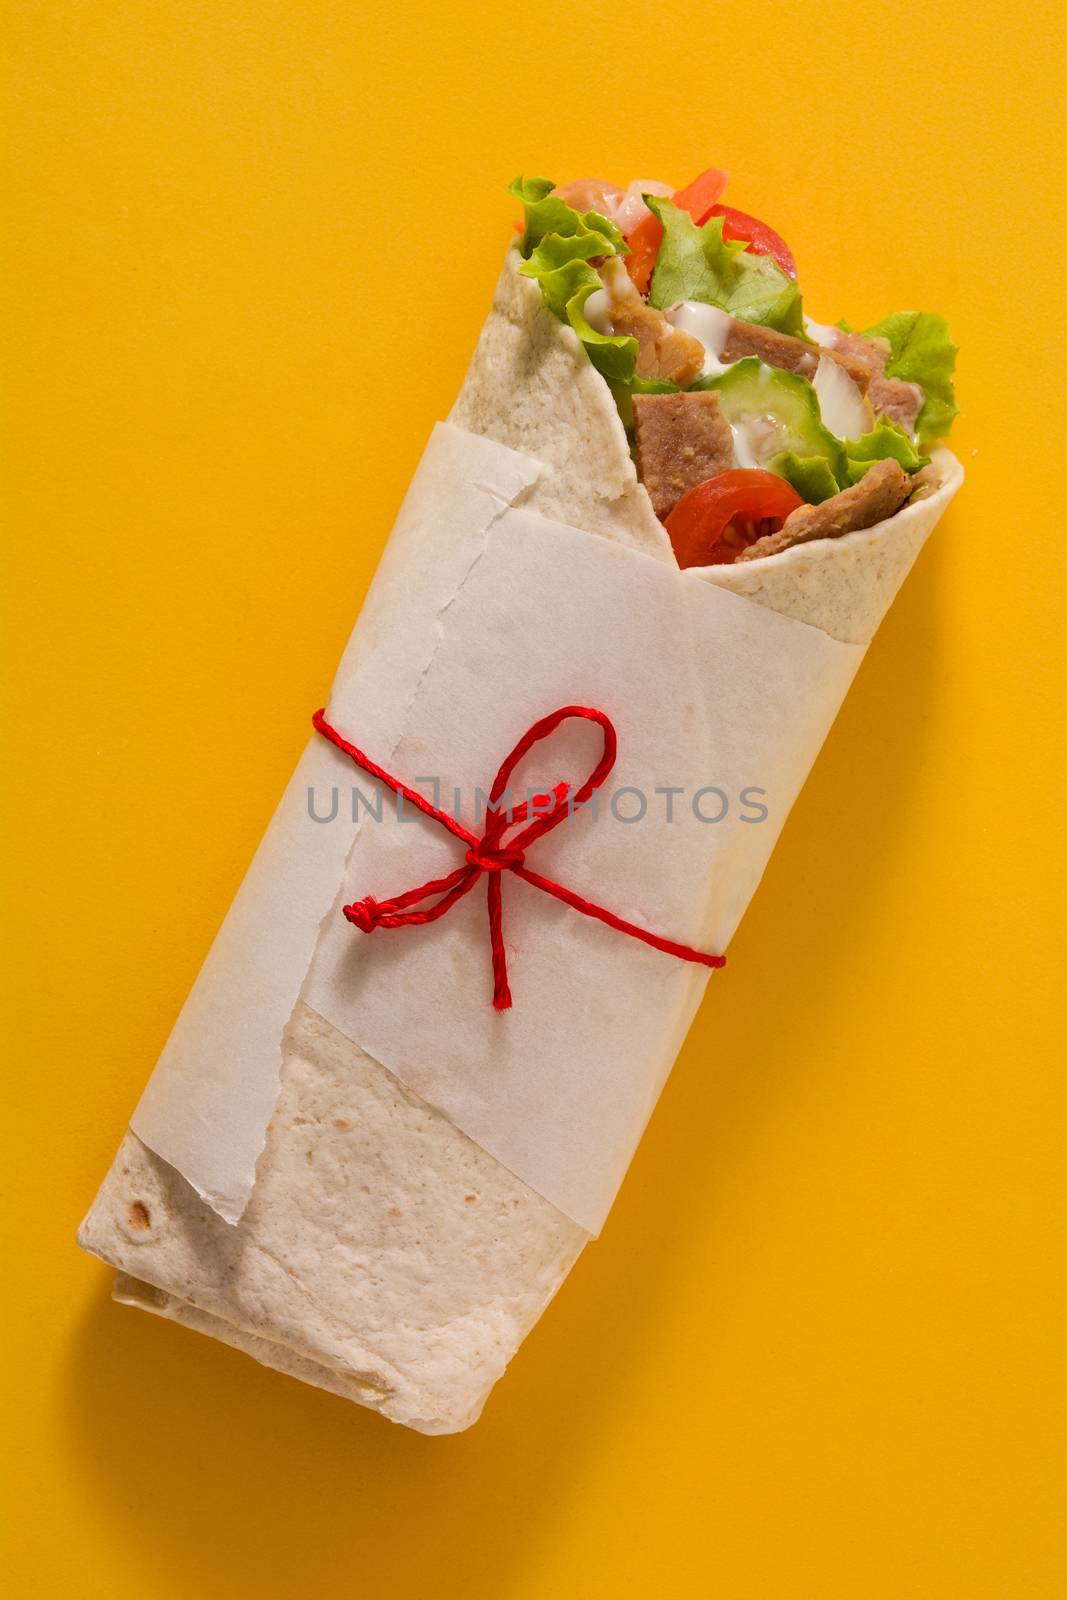 Doner kebab or shawarma sandwich  by chandlervid85